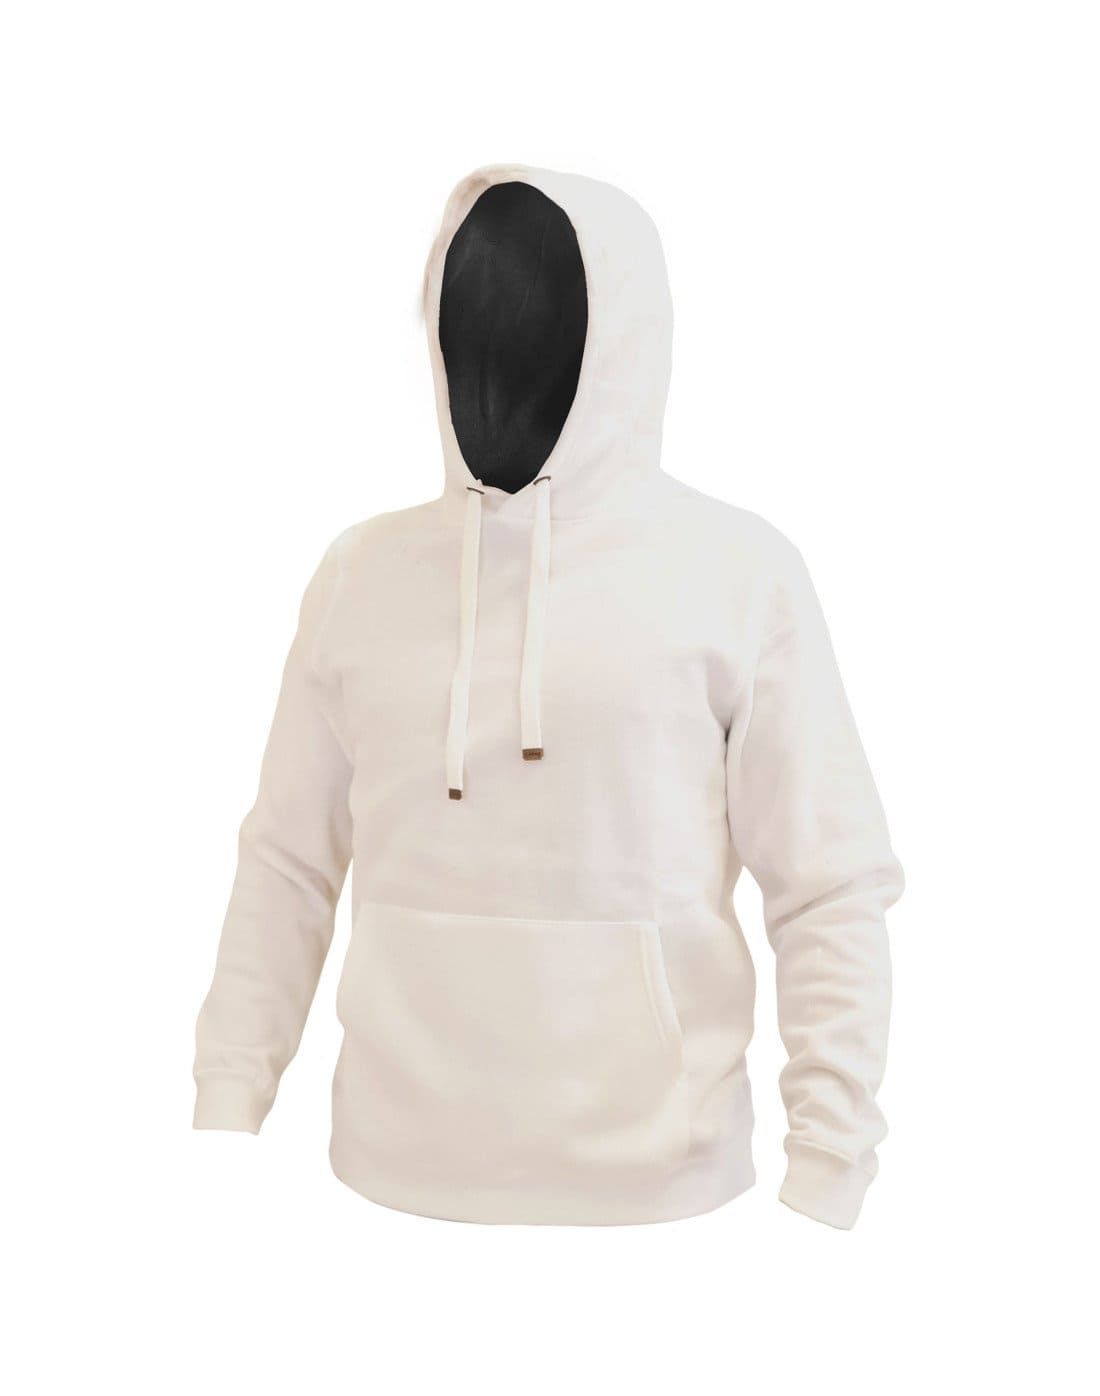 Polerón Blanco canguro hoodie de TEAMGRAFF, estilo urbano con comodidad superior, ideal para el día a día y aventuras al aire libre